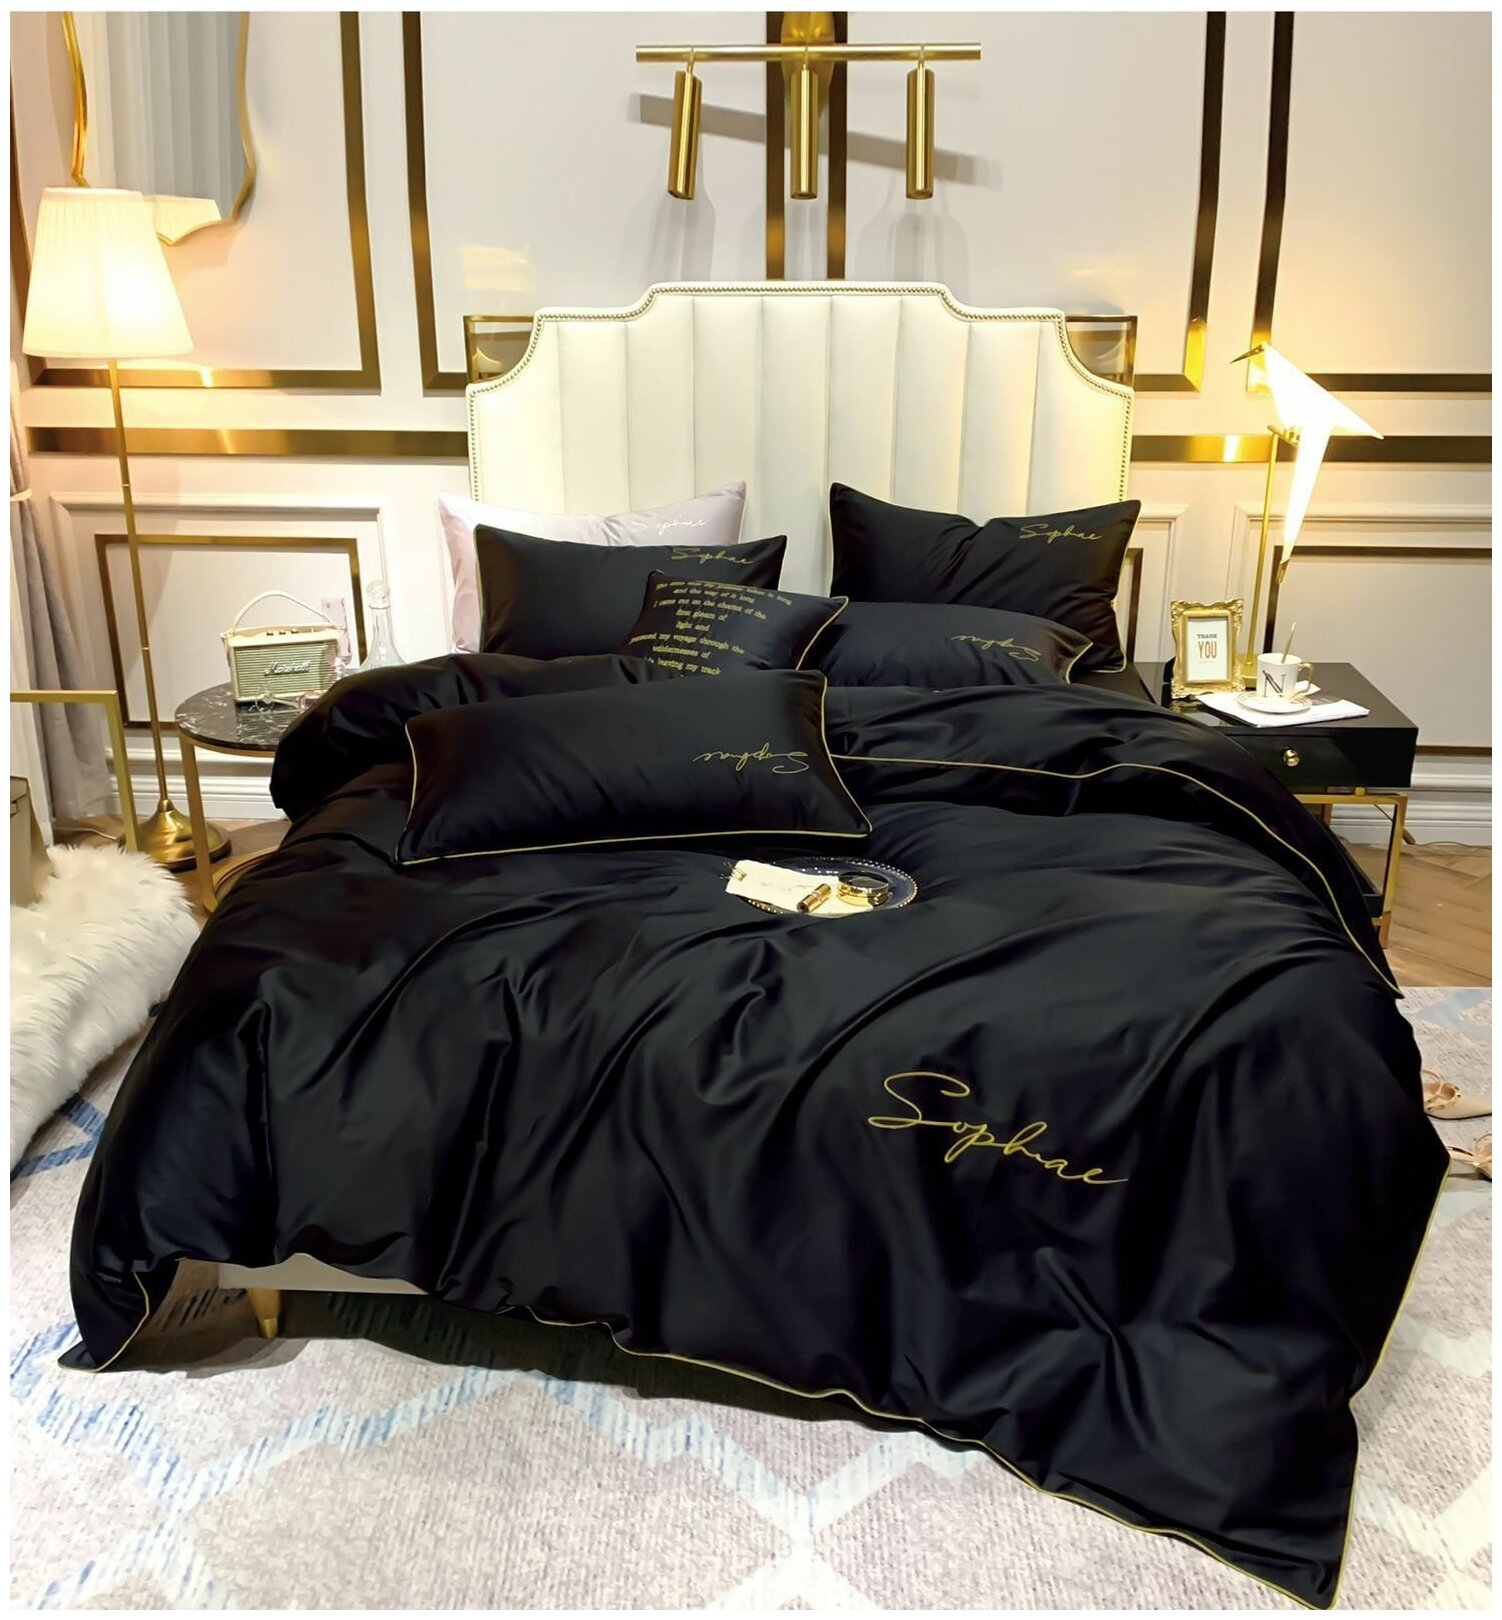 Комплект постельного белья Mency Жатка, евростандарт, сатин, черный — купить в интернет-магазине по низкой цене на Яндекс Маркете